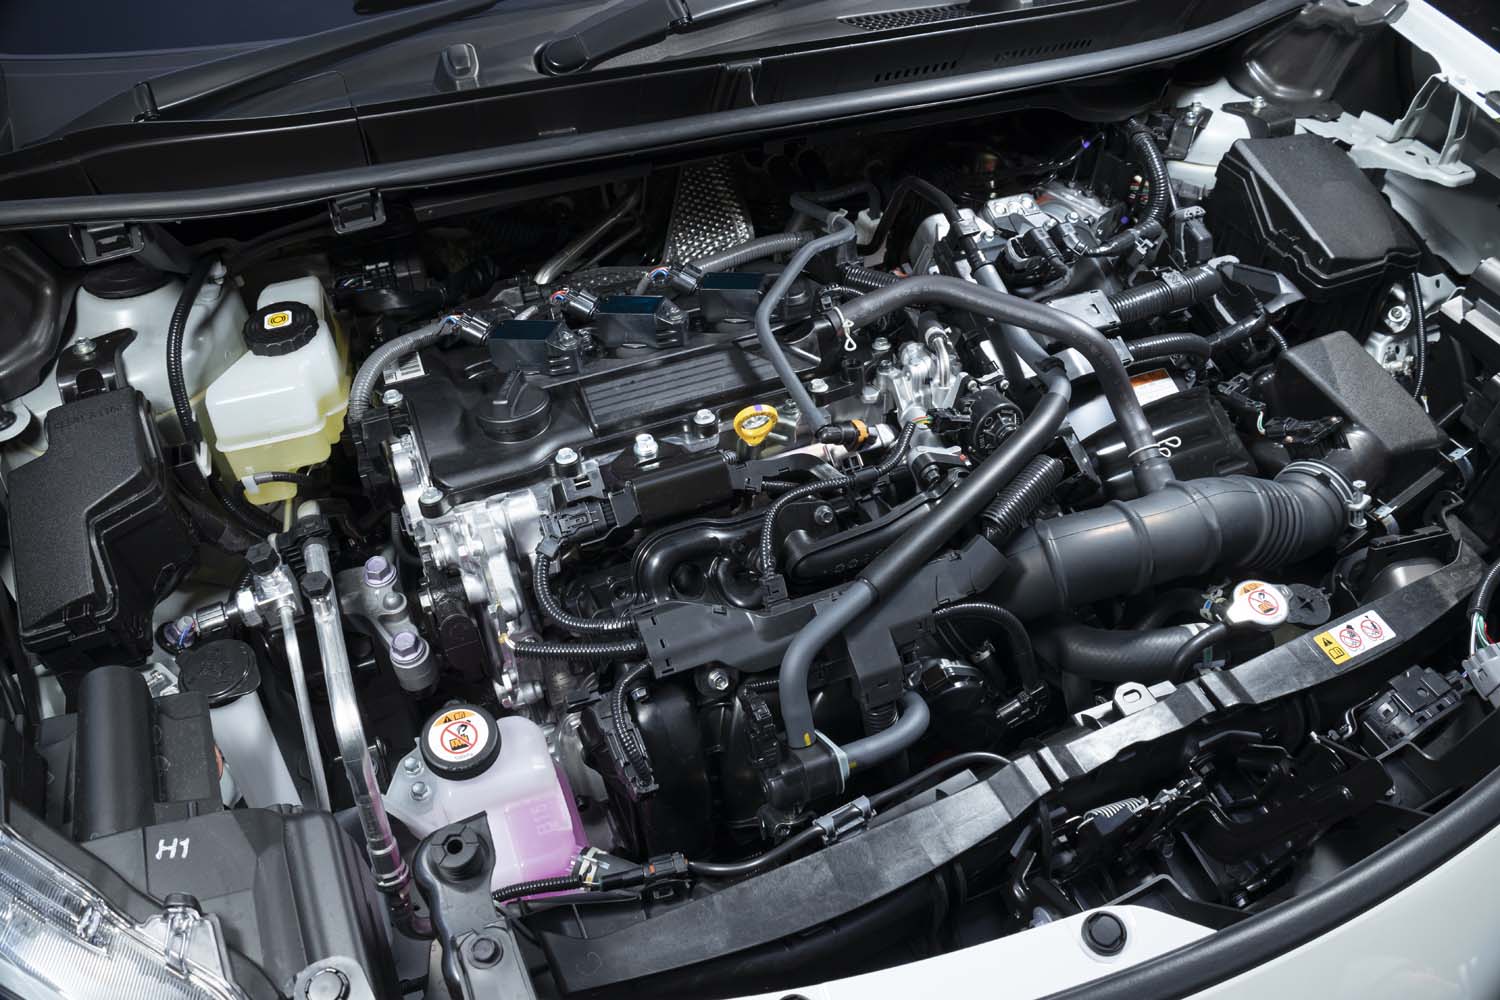 最高出力91PSの1.5リッター直3エンジンに、最高出力80PSの電気モーターを組み合わせたハイブリッドユニット。「ハイブリッドZ」の場合、WLTCモードの燃費値は27.8km/リッターと公表される。